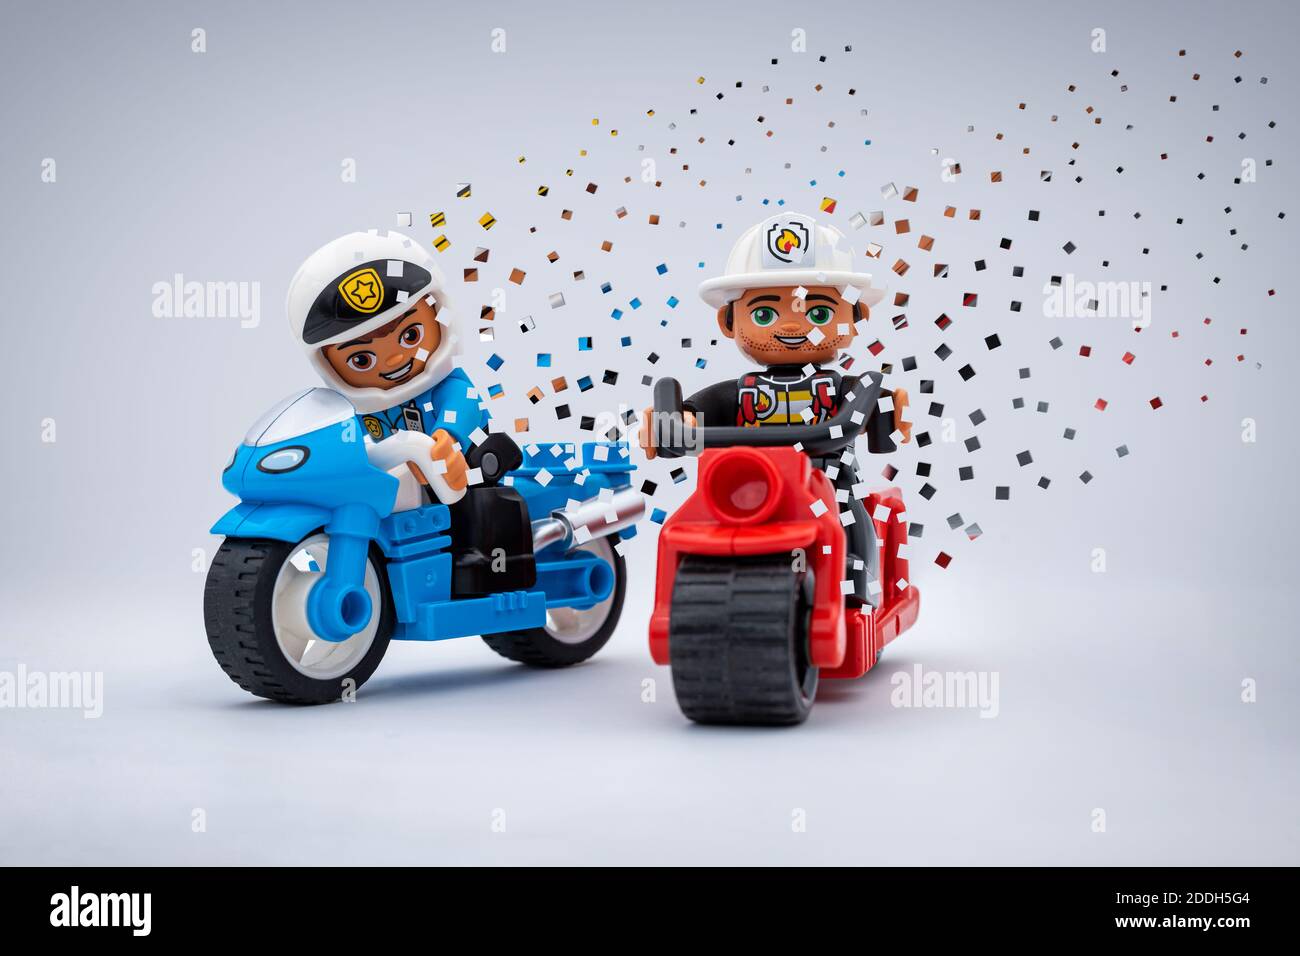 Deux motocyclistes Lego minifures avec un effet de désintégration pixélisé. Un policier sur une moto bleue et un pompier sur une rouge. Banque D'Images